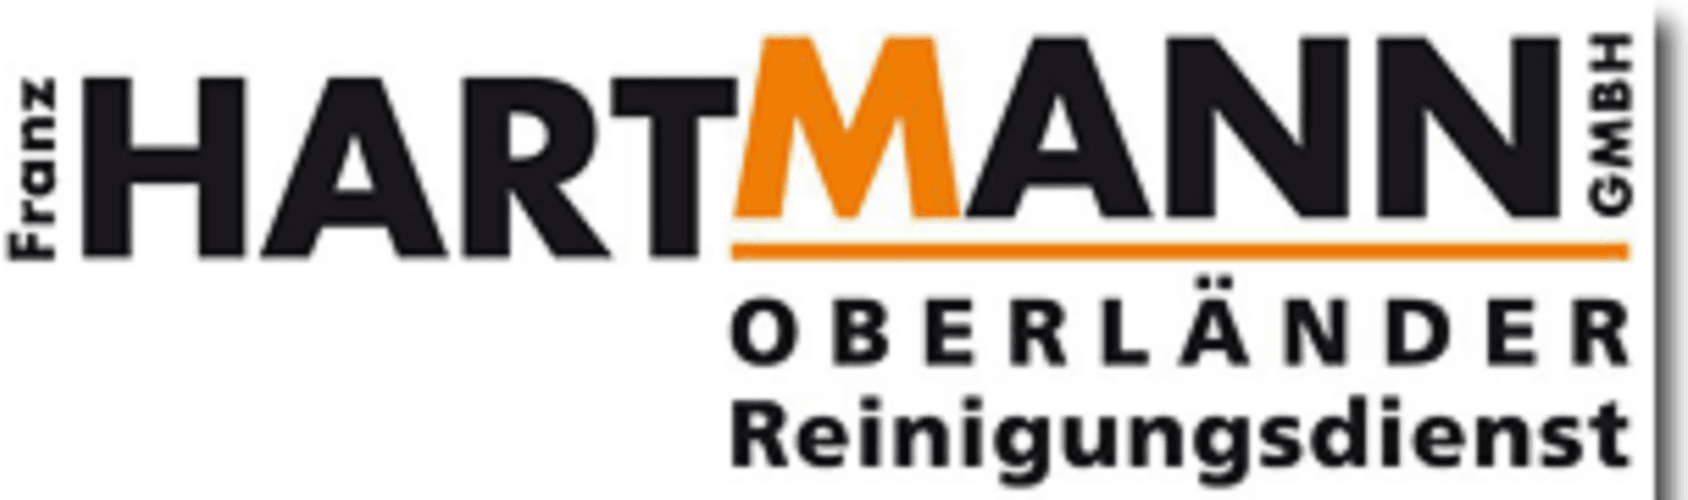 Logo Hartmann Franz GmbH - Oberländer Reinigungsdienst